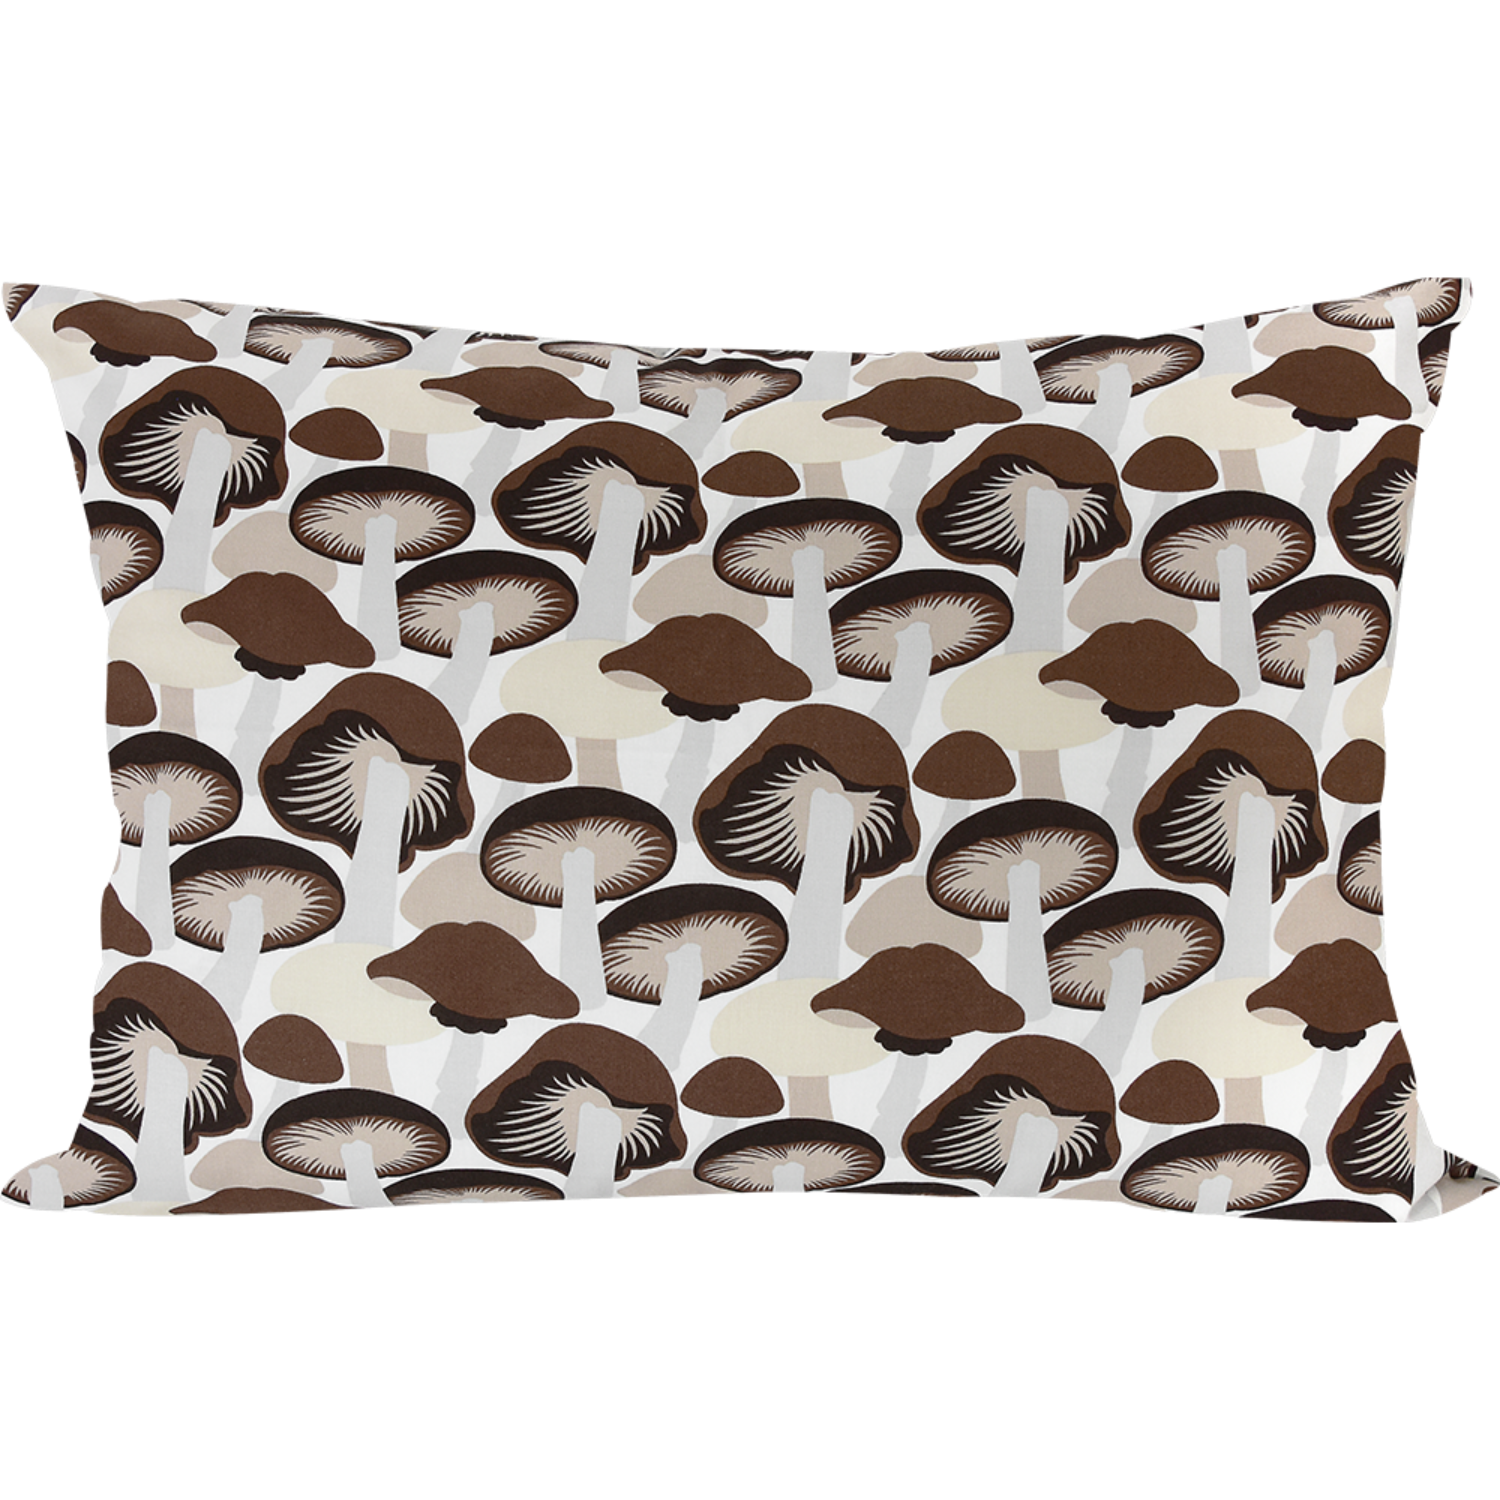 Mushroom Farm Pillowcase 머쉬룸 팜 베개 커버